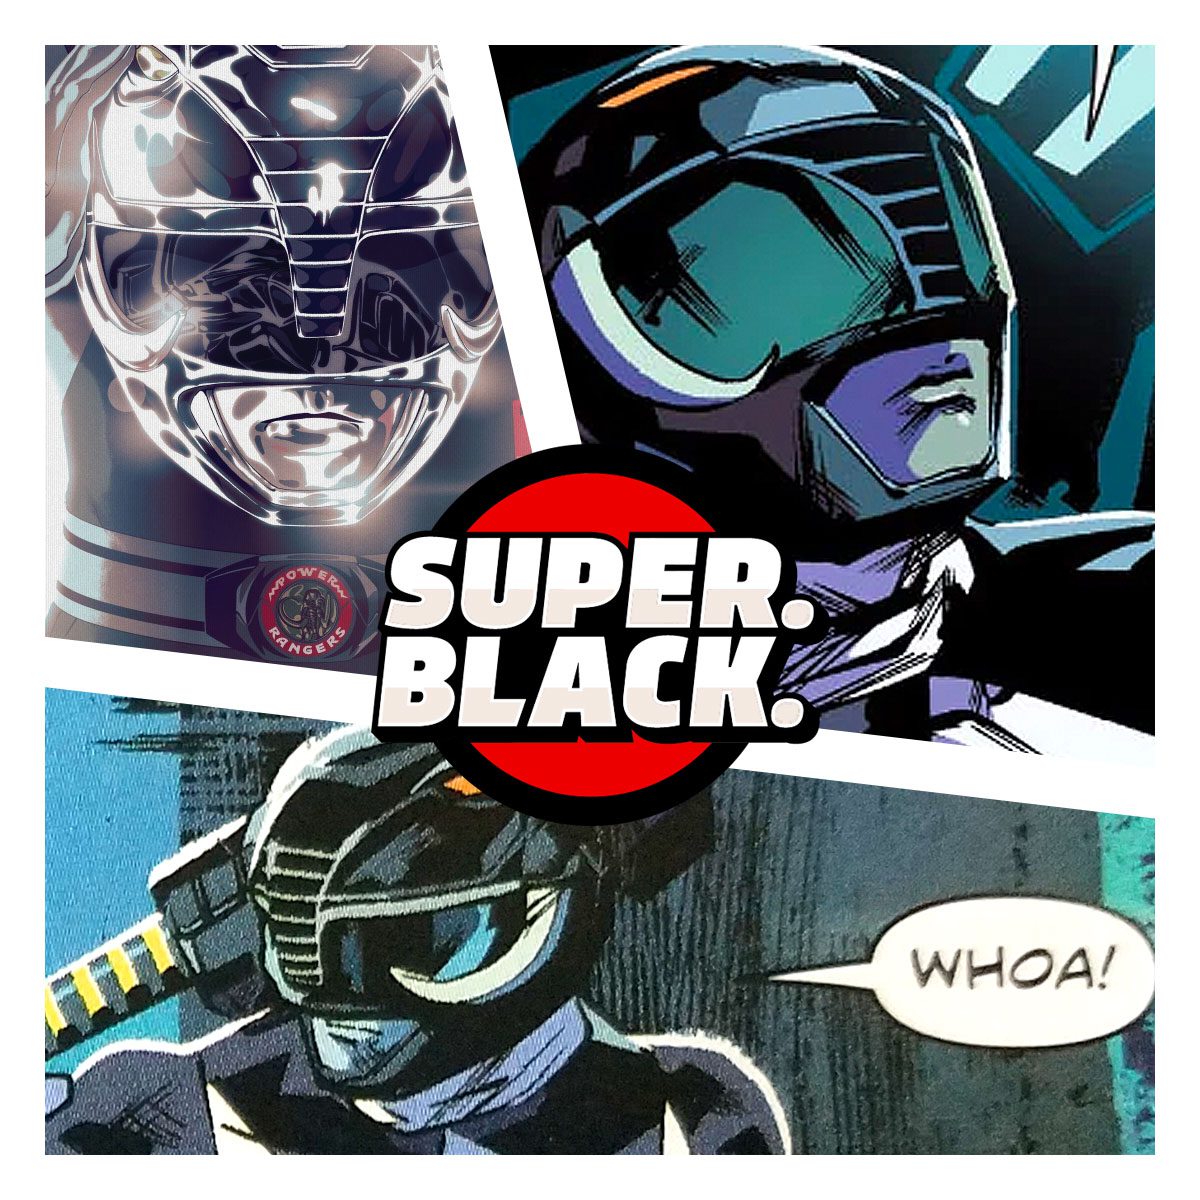 Black Ranger - Super. Black.